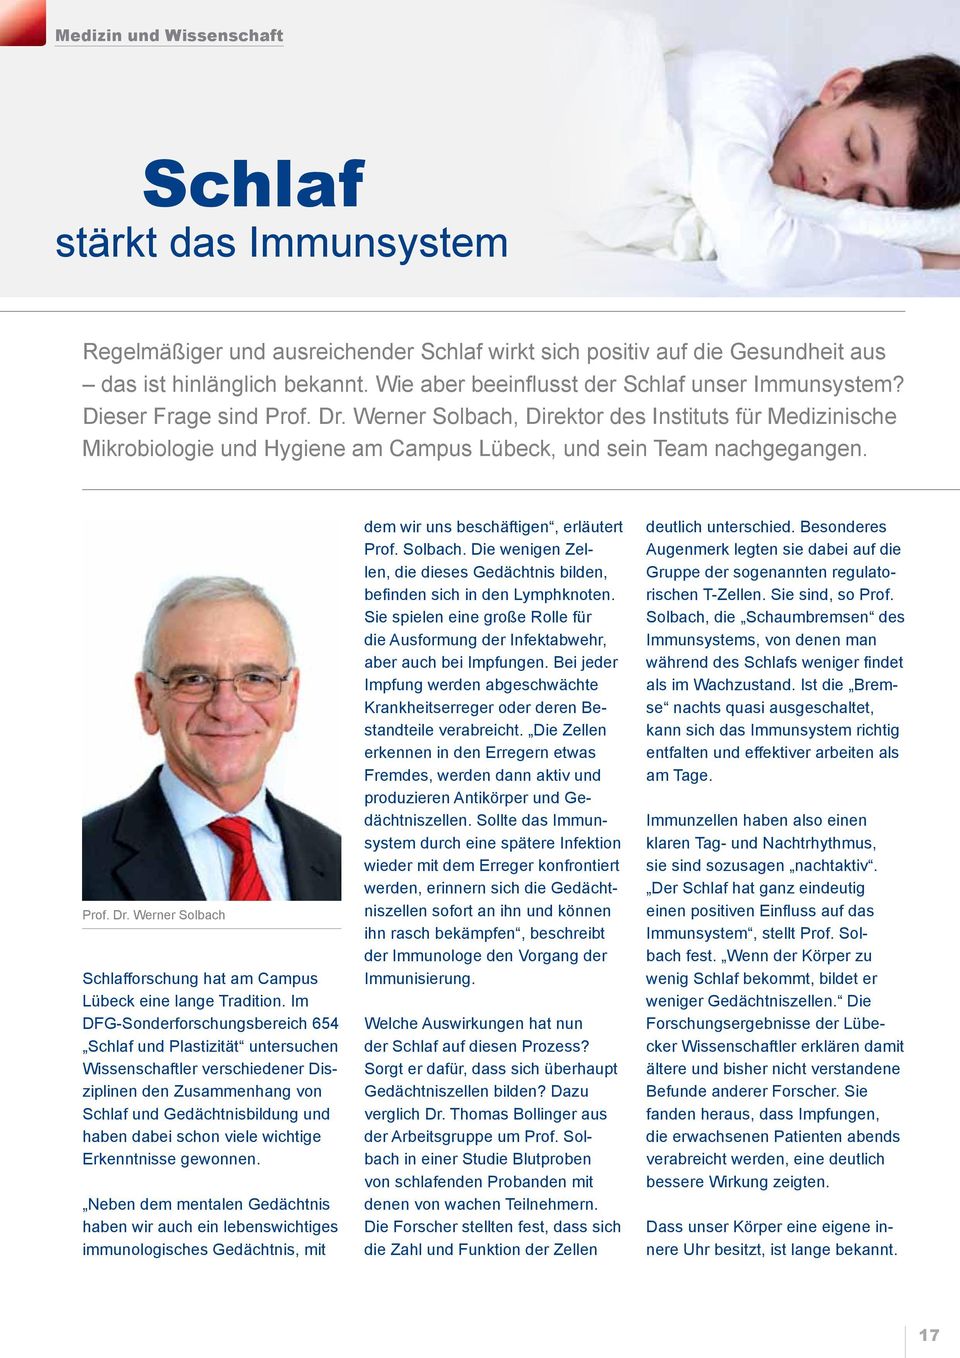 Werner Solbach, Direktor des Instituts für Medizinische Mikrobiologie und Hygiene am Campus Lübeck, und sein Team nachgegangen. Prof. Dr.